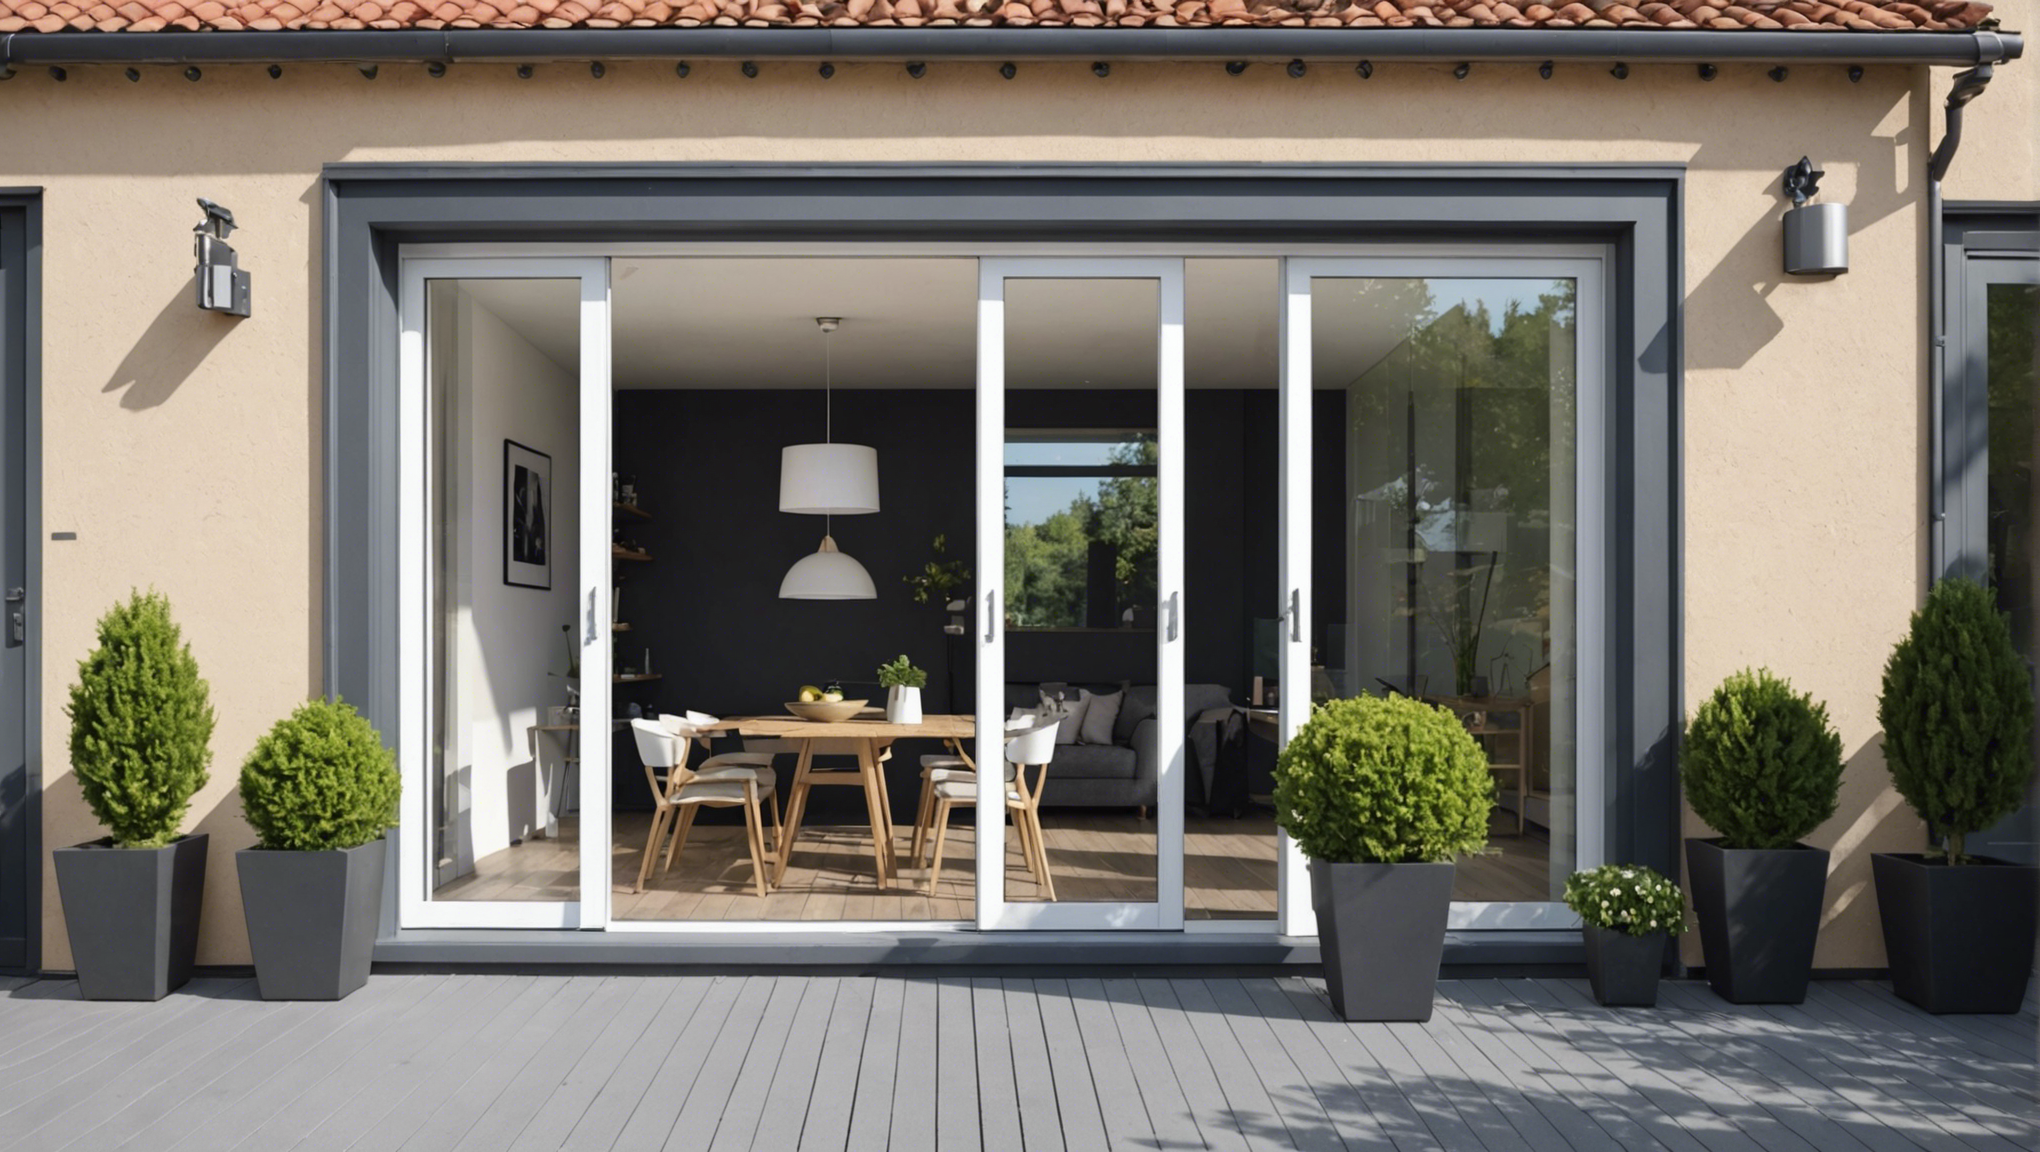 découvrez les critères essentiels à prendre en compte pour sélectionner la meilleure fenêtre coulissante pour votre maison et profiter d'un confort optimal.